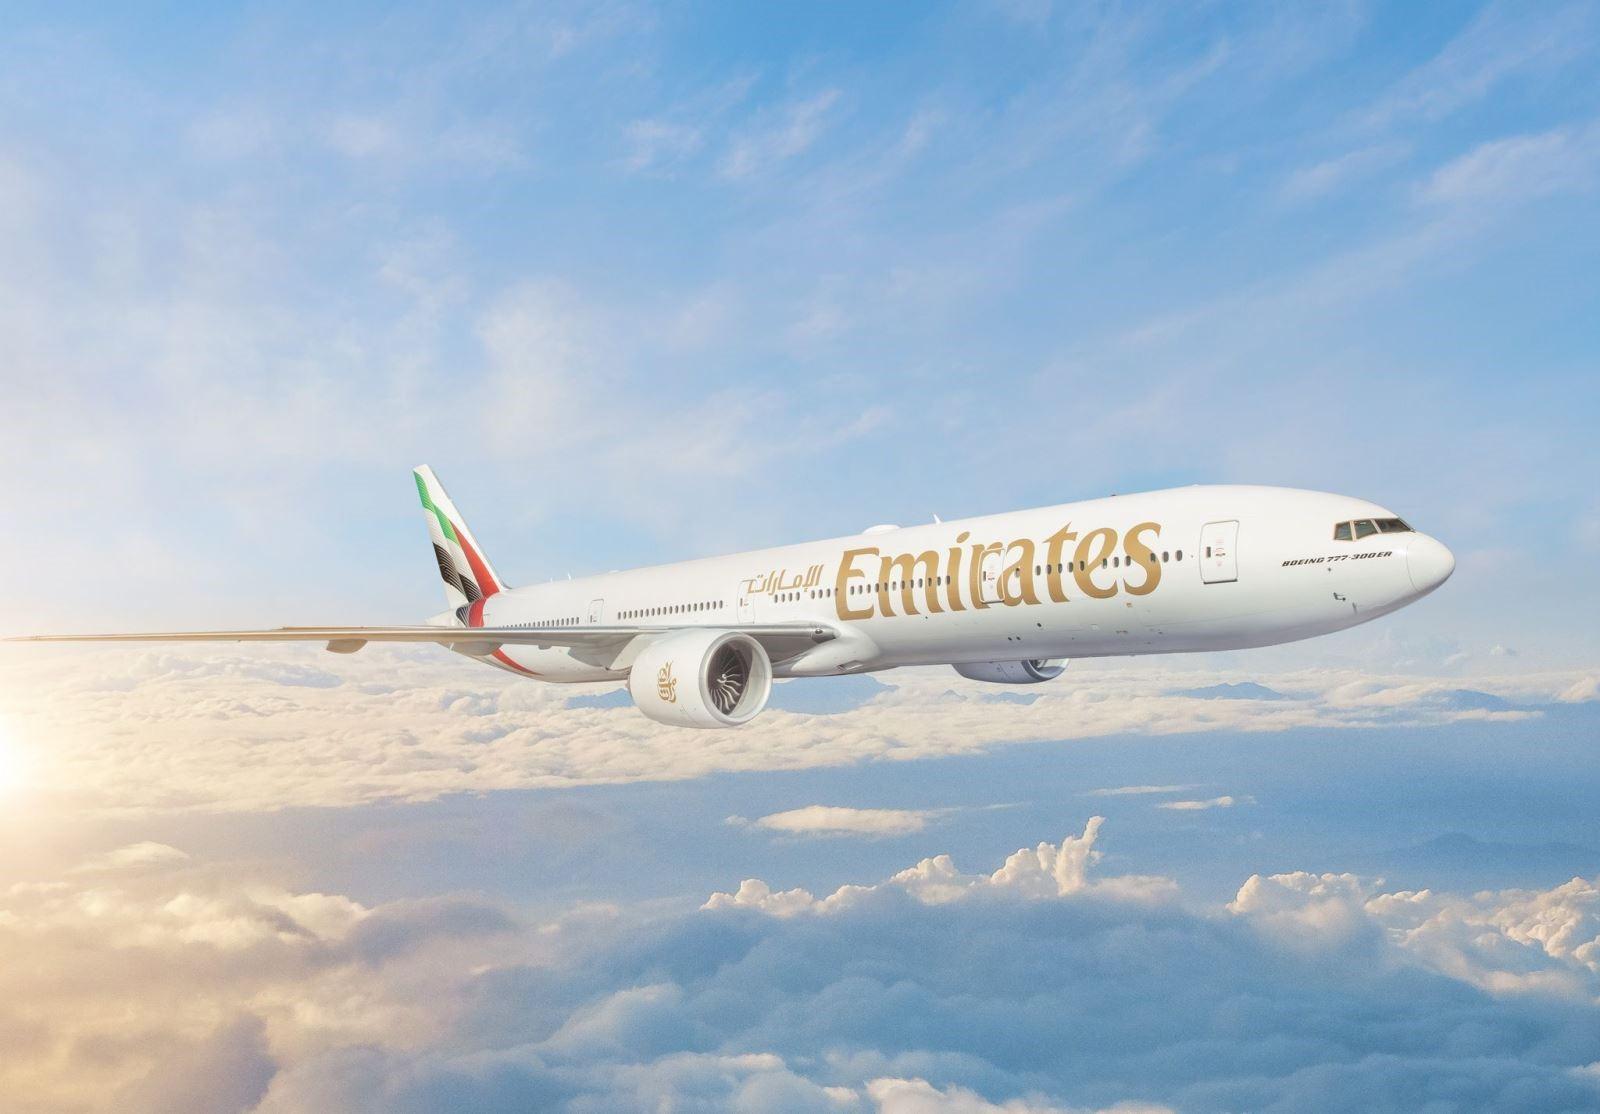 Emirates khai thác chuyến bay hàng ngày thứ hai tới TP.HCM. (Ảnh minh họa)